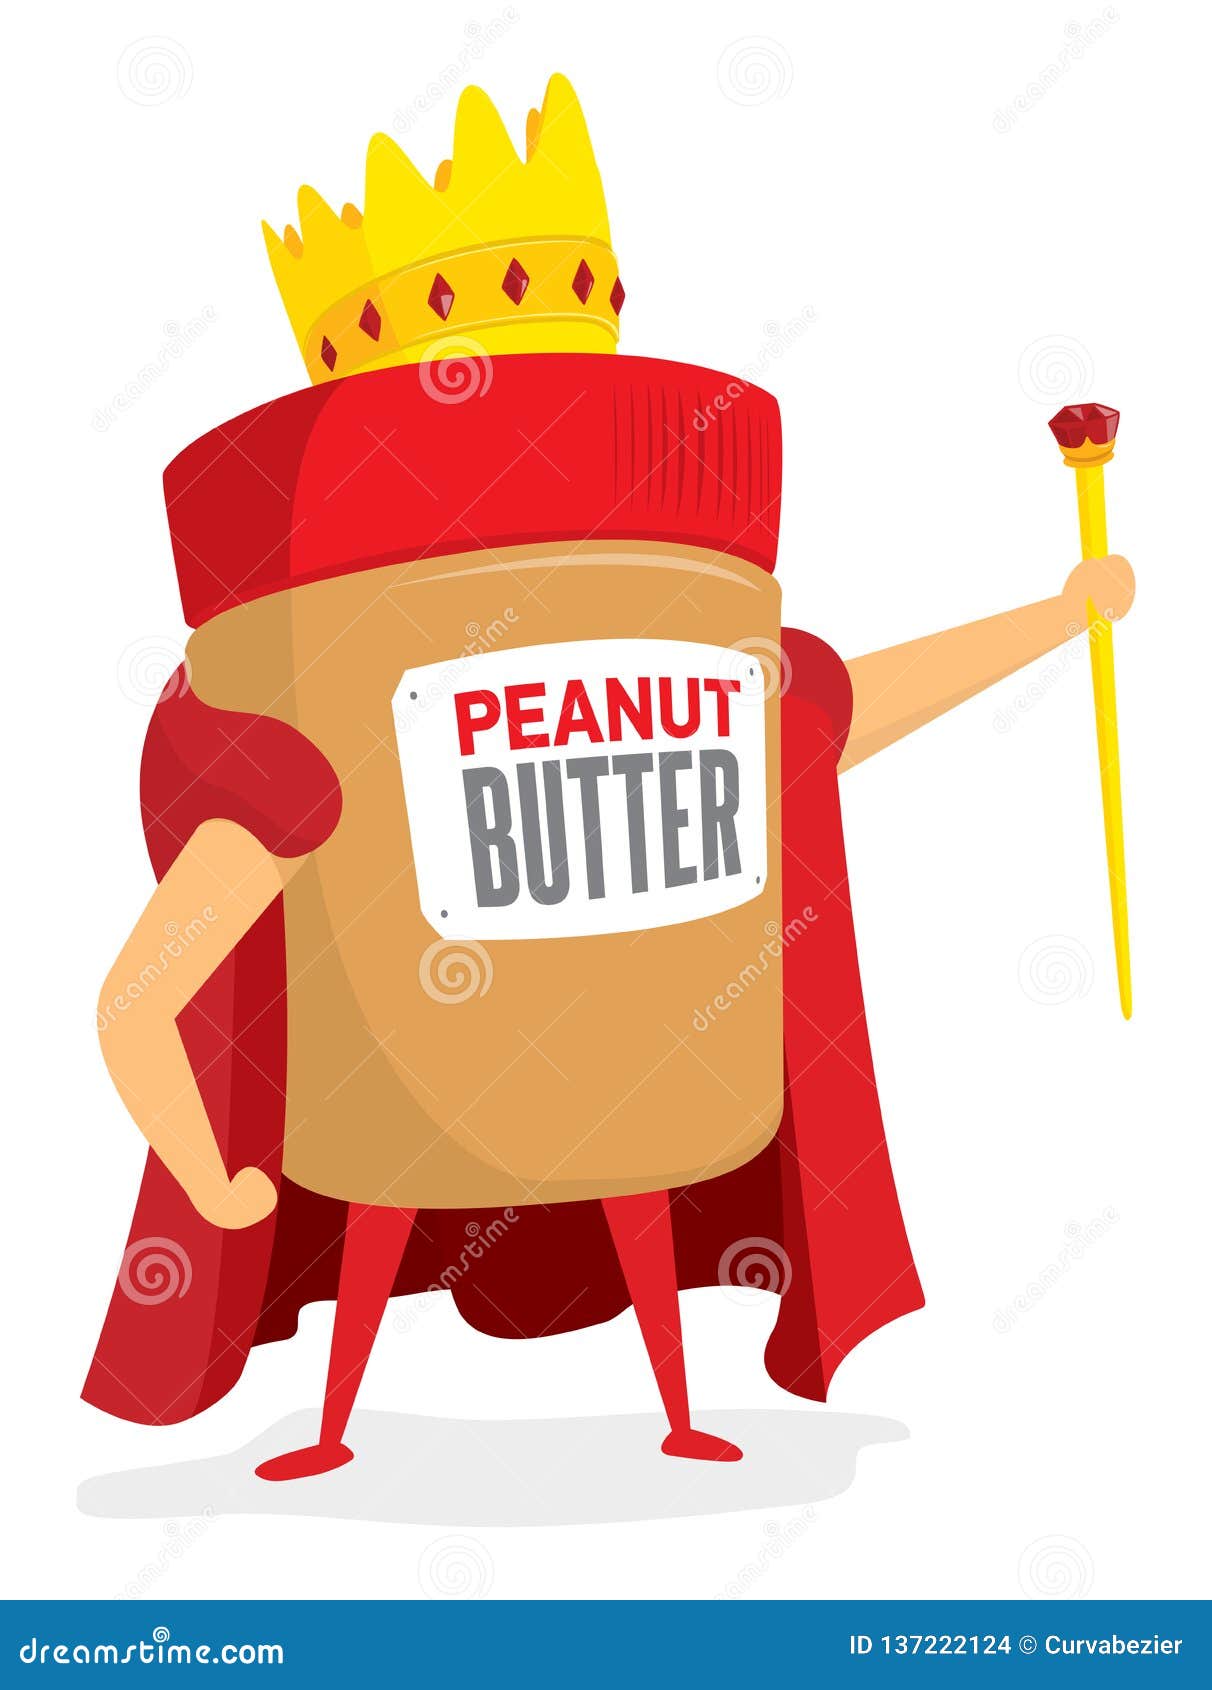 King of peanut butter stock vector. Illustration of cartoon - 137222124